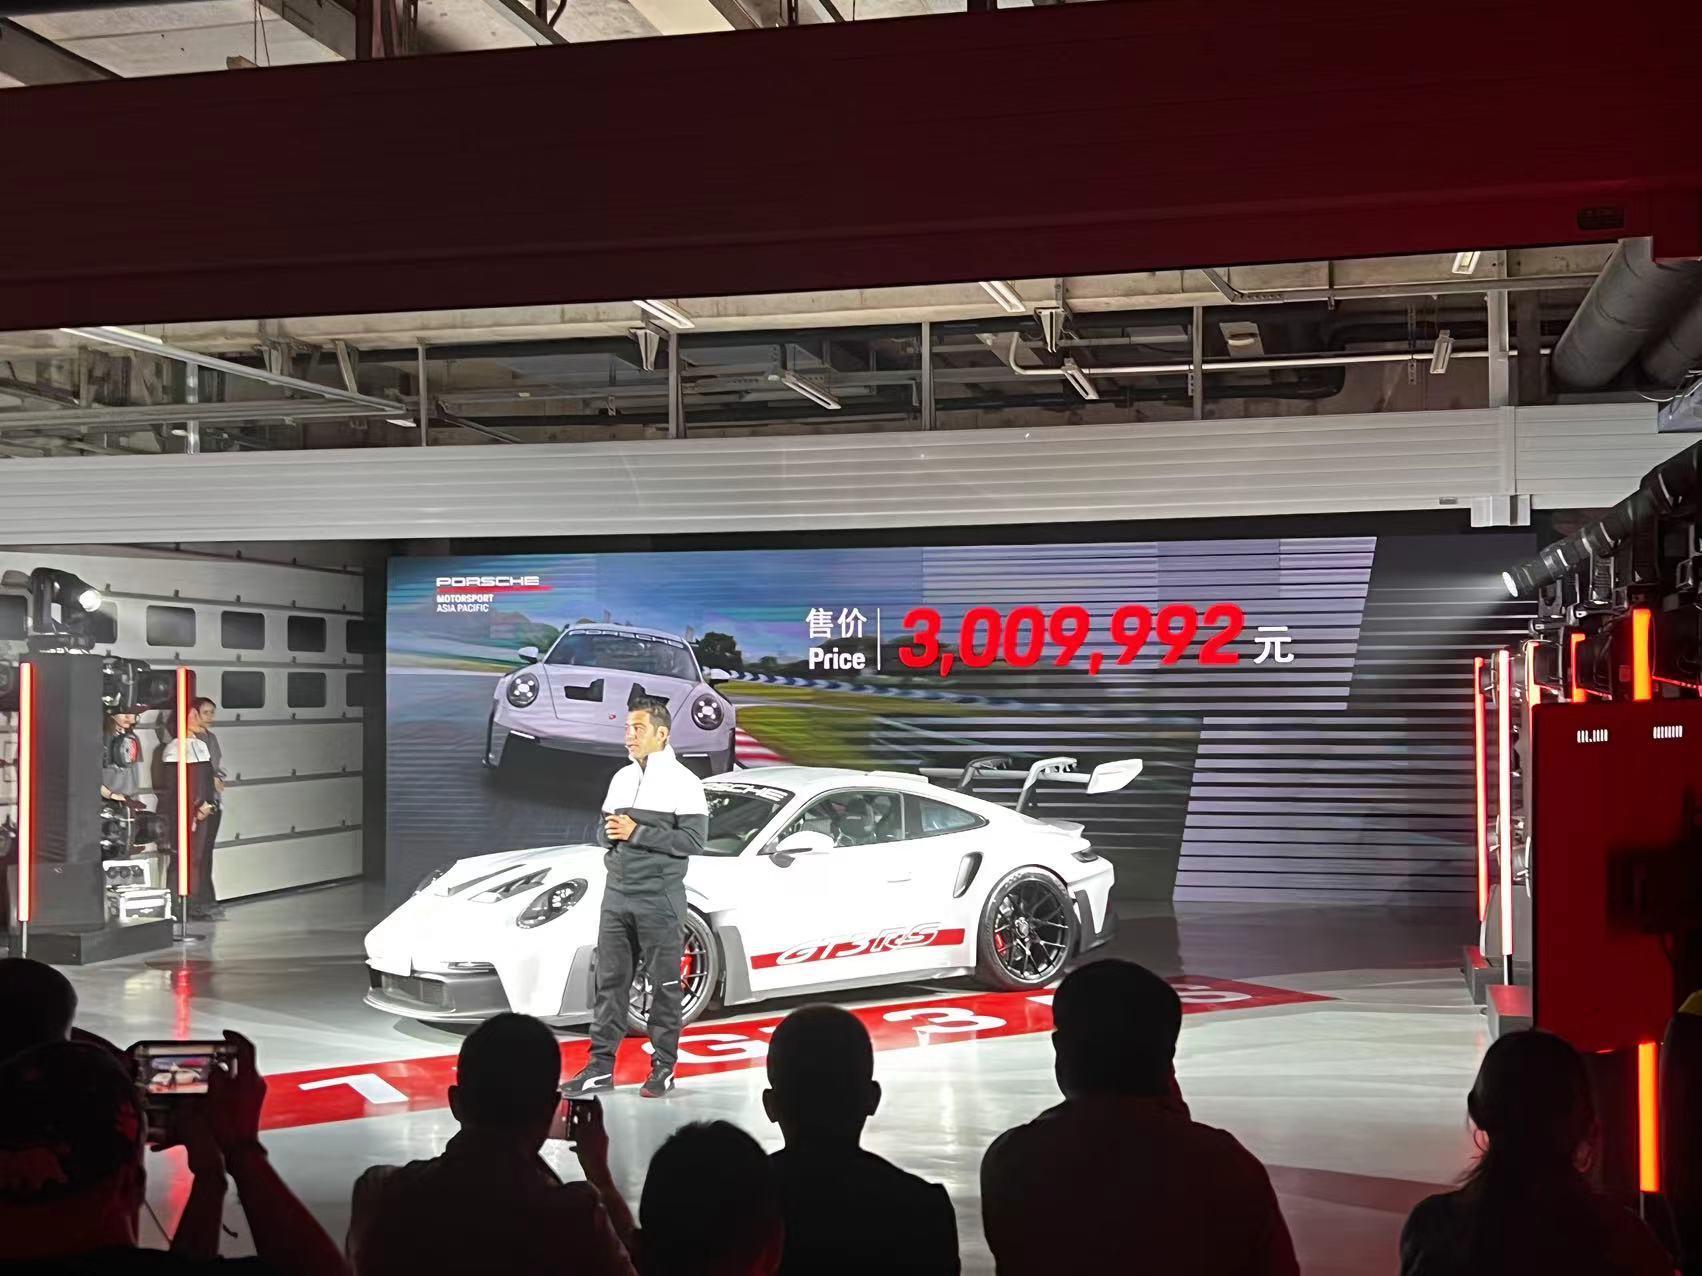 300. 9992万元 今晚做梦的素材有了 全新911 GT3 RS售价公布